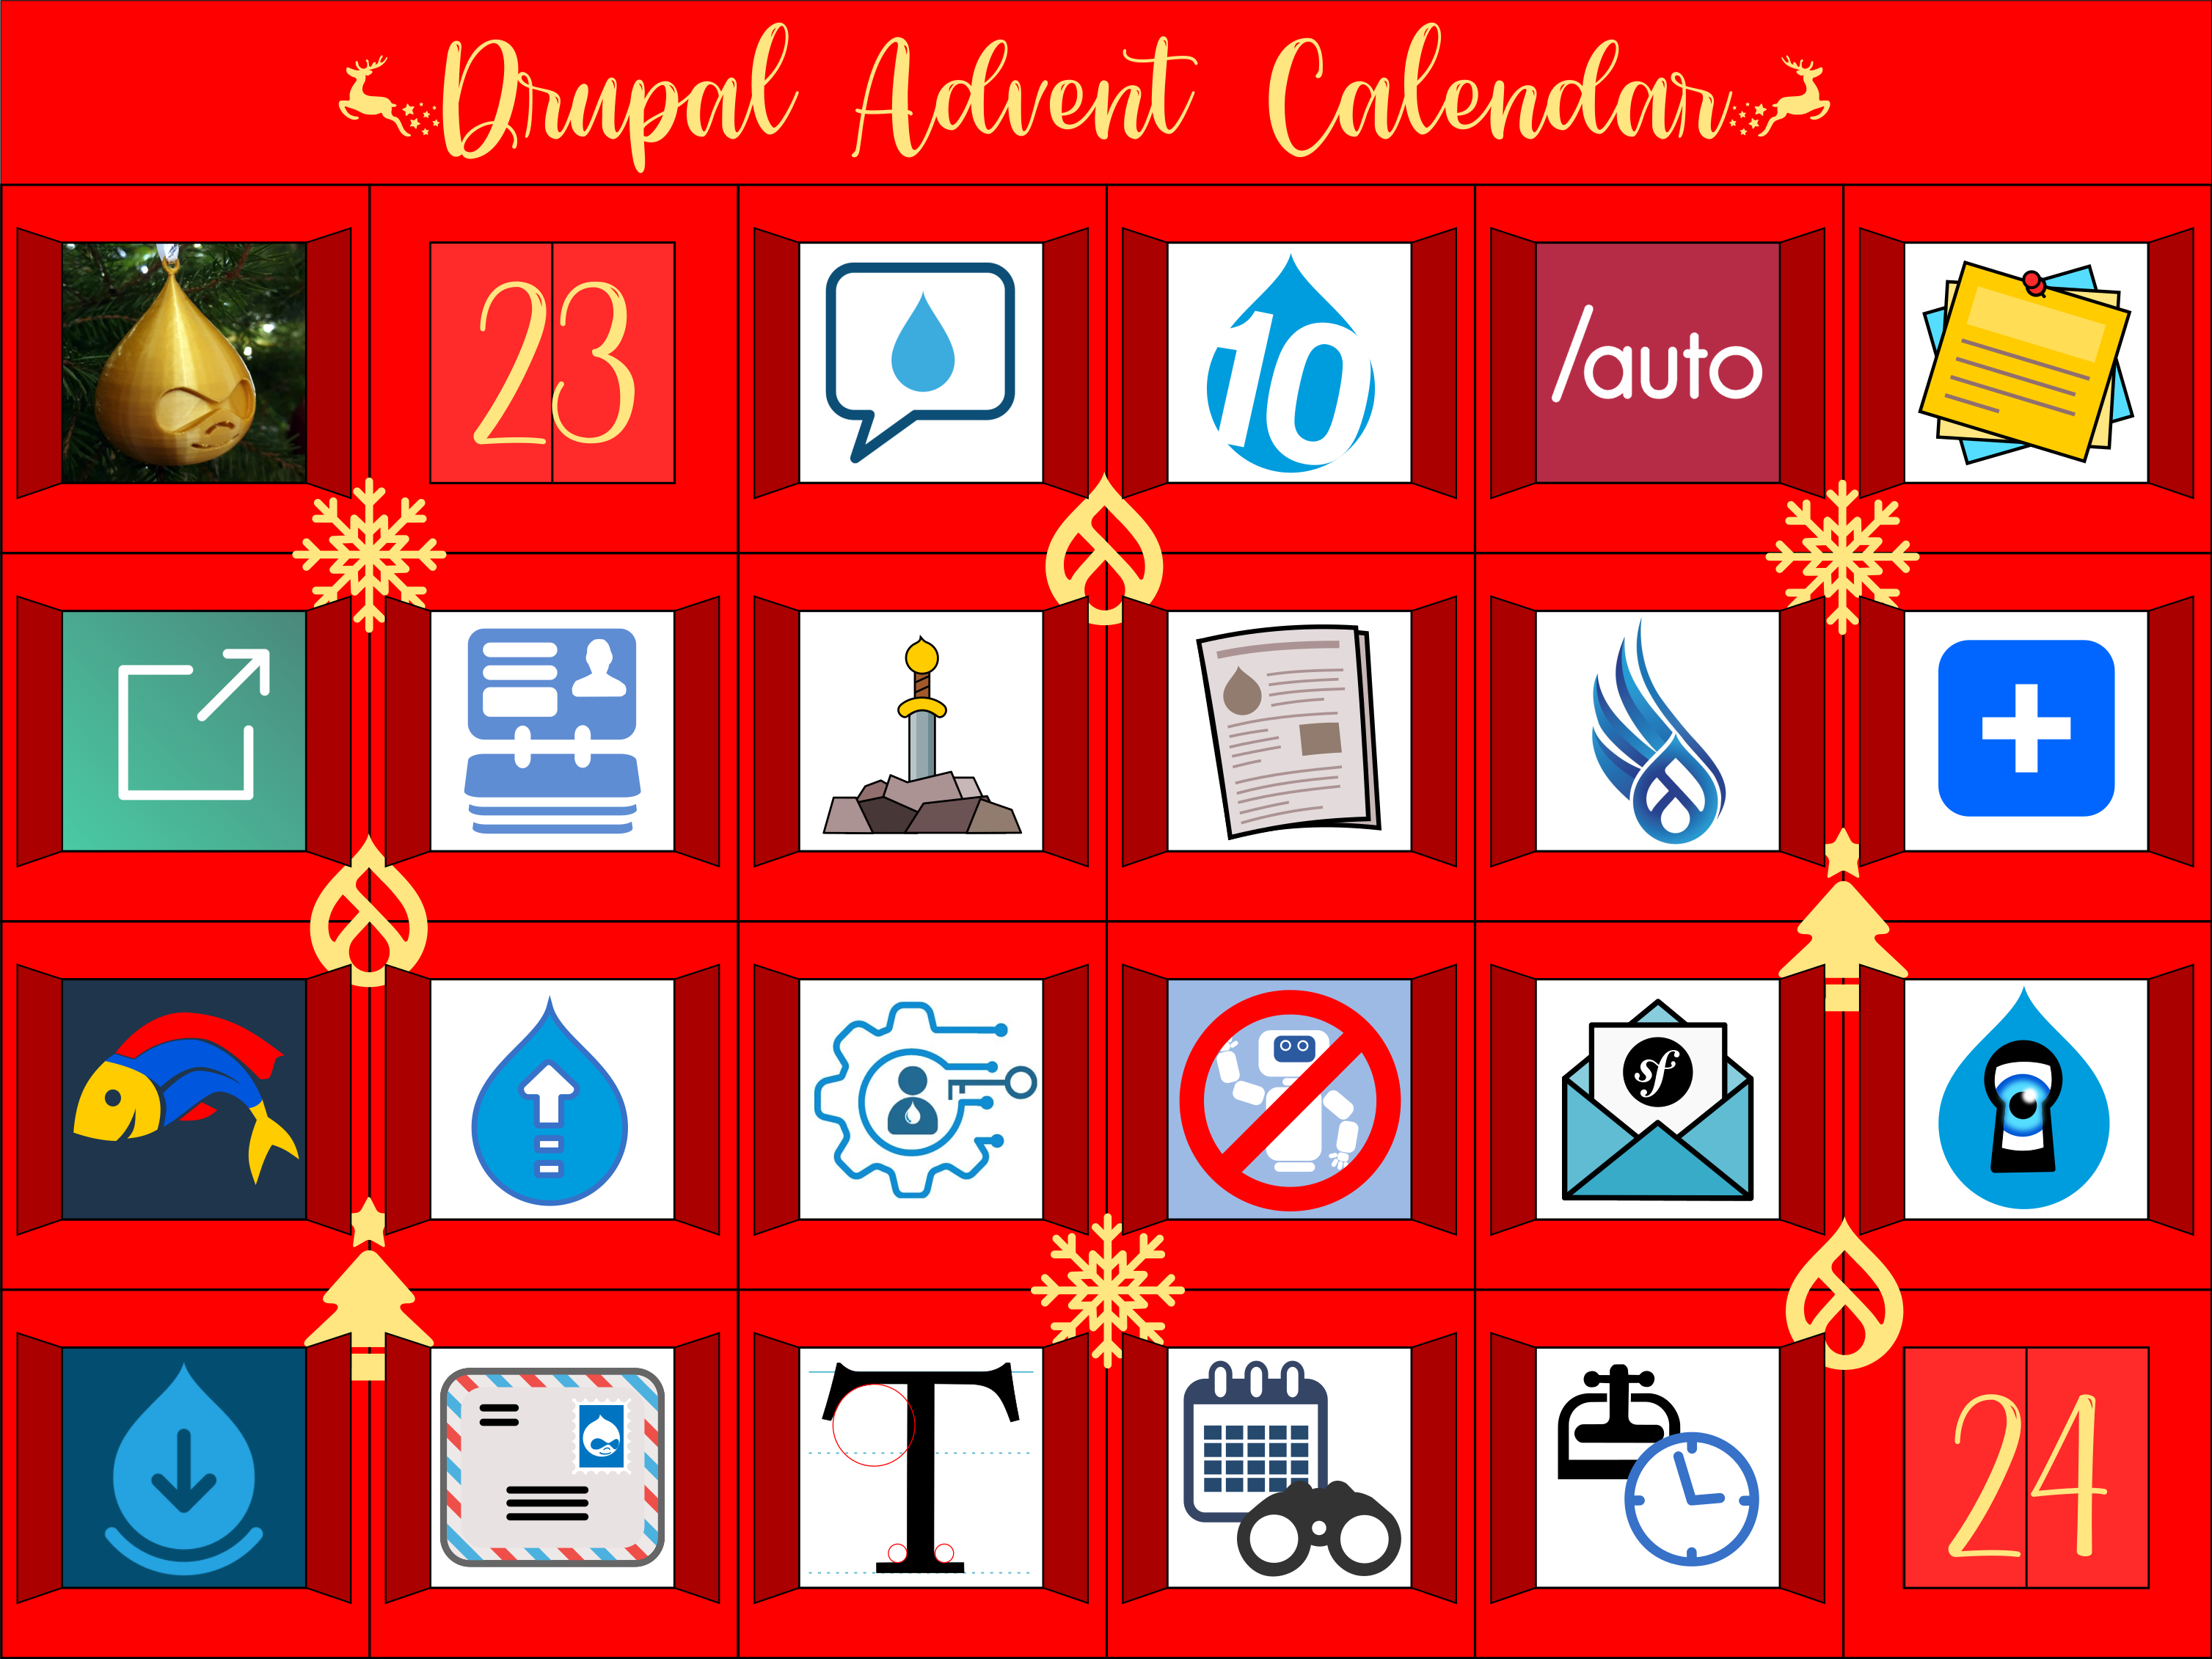 Advent Calendar with door 22 open, revealing Project Browser